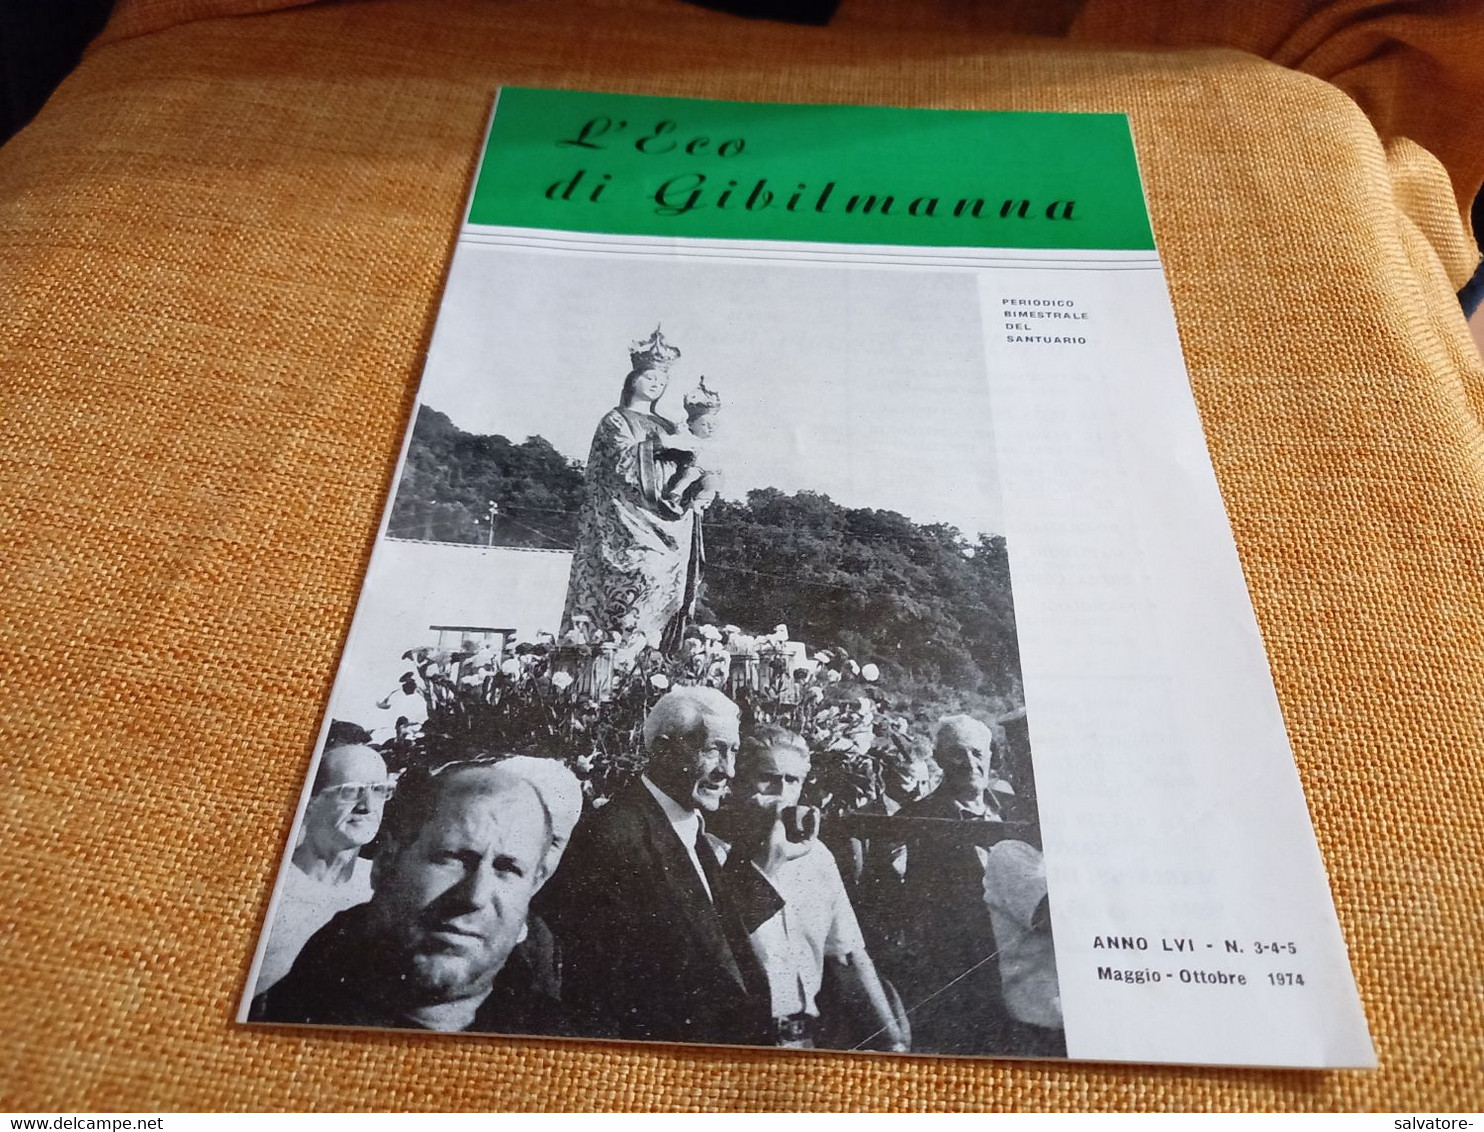 GIORNALE L'ECO DI GIBILMANNA (PA) PERIODICO BIMESTRALE DEL SANTUARIO 1974 - Religion